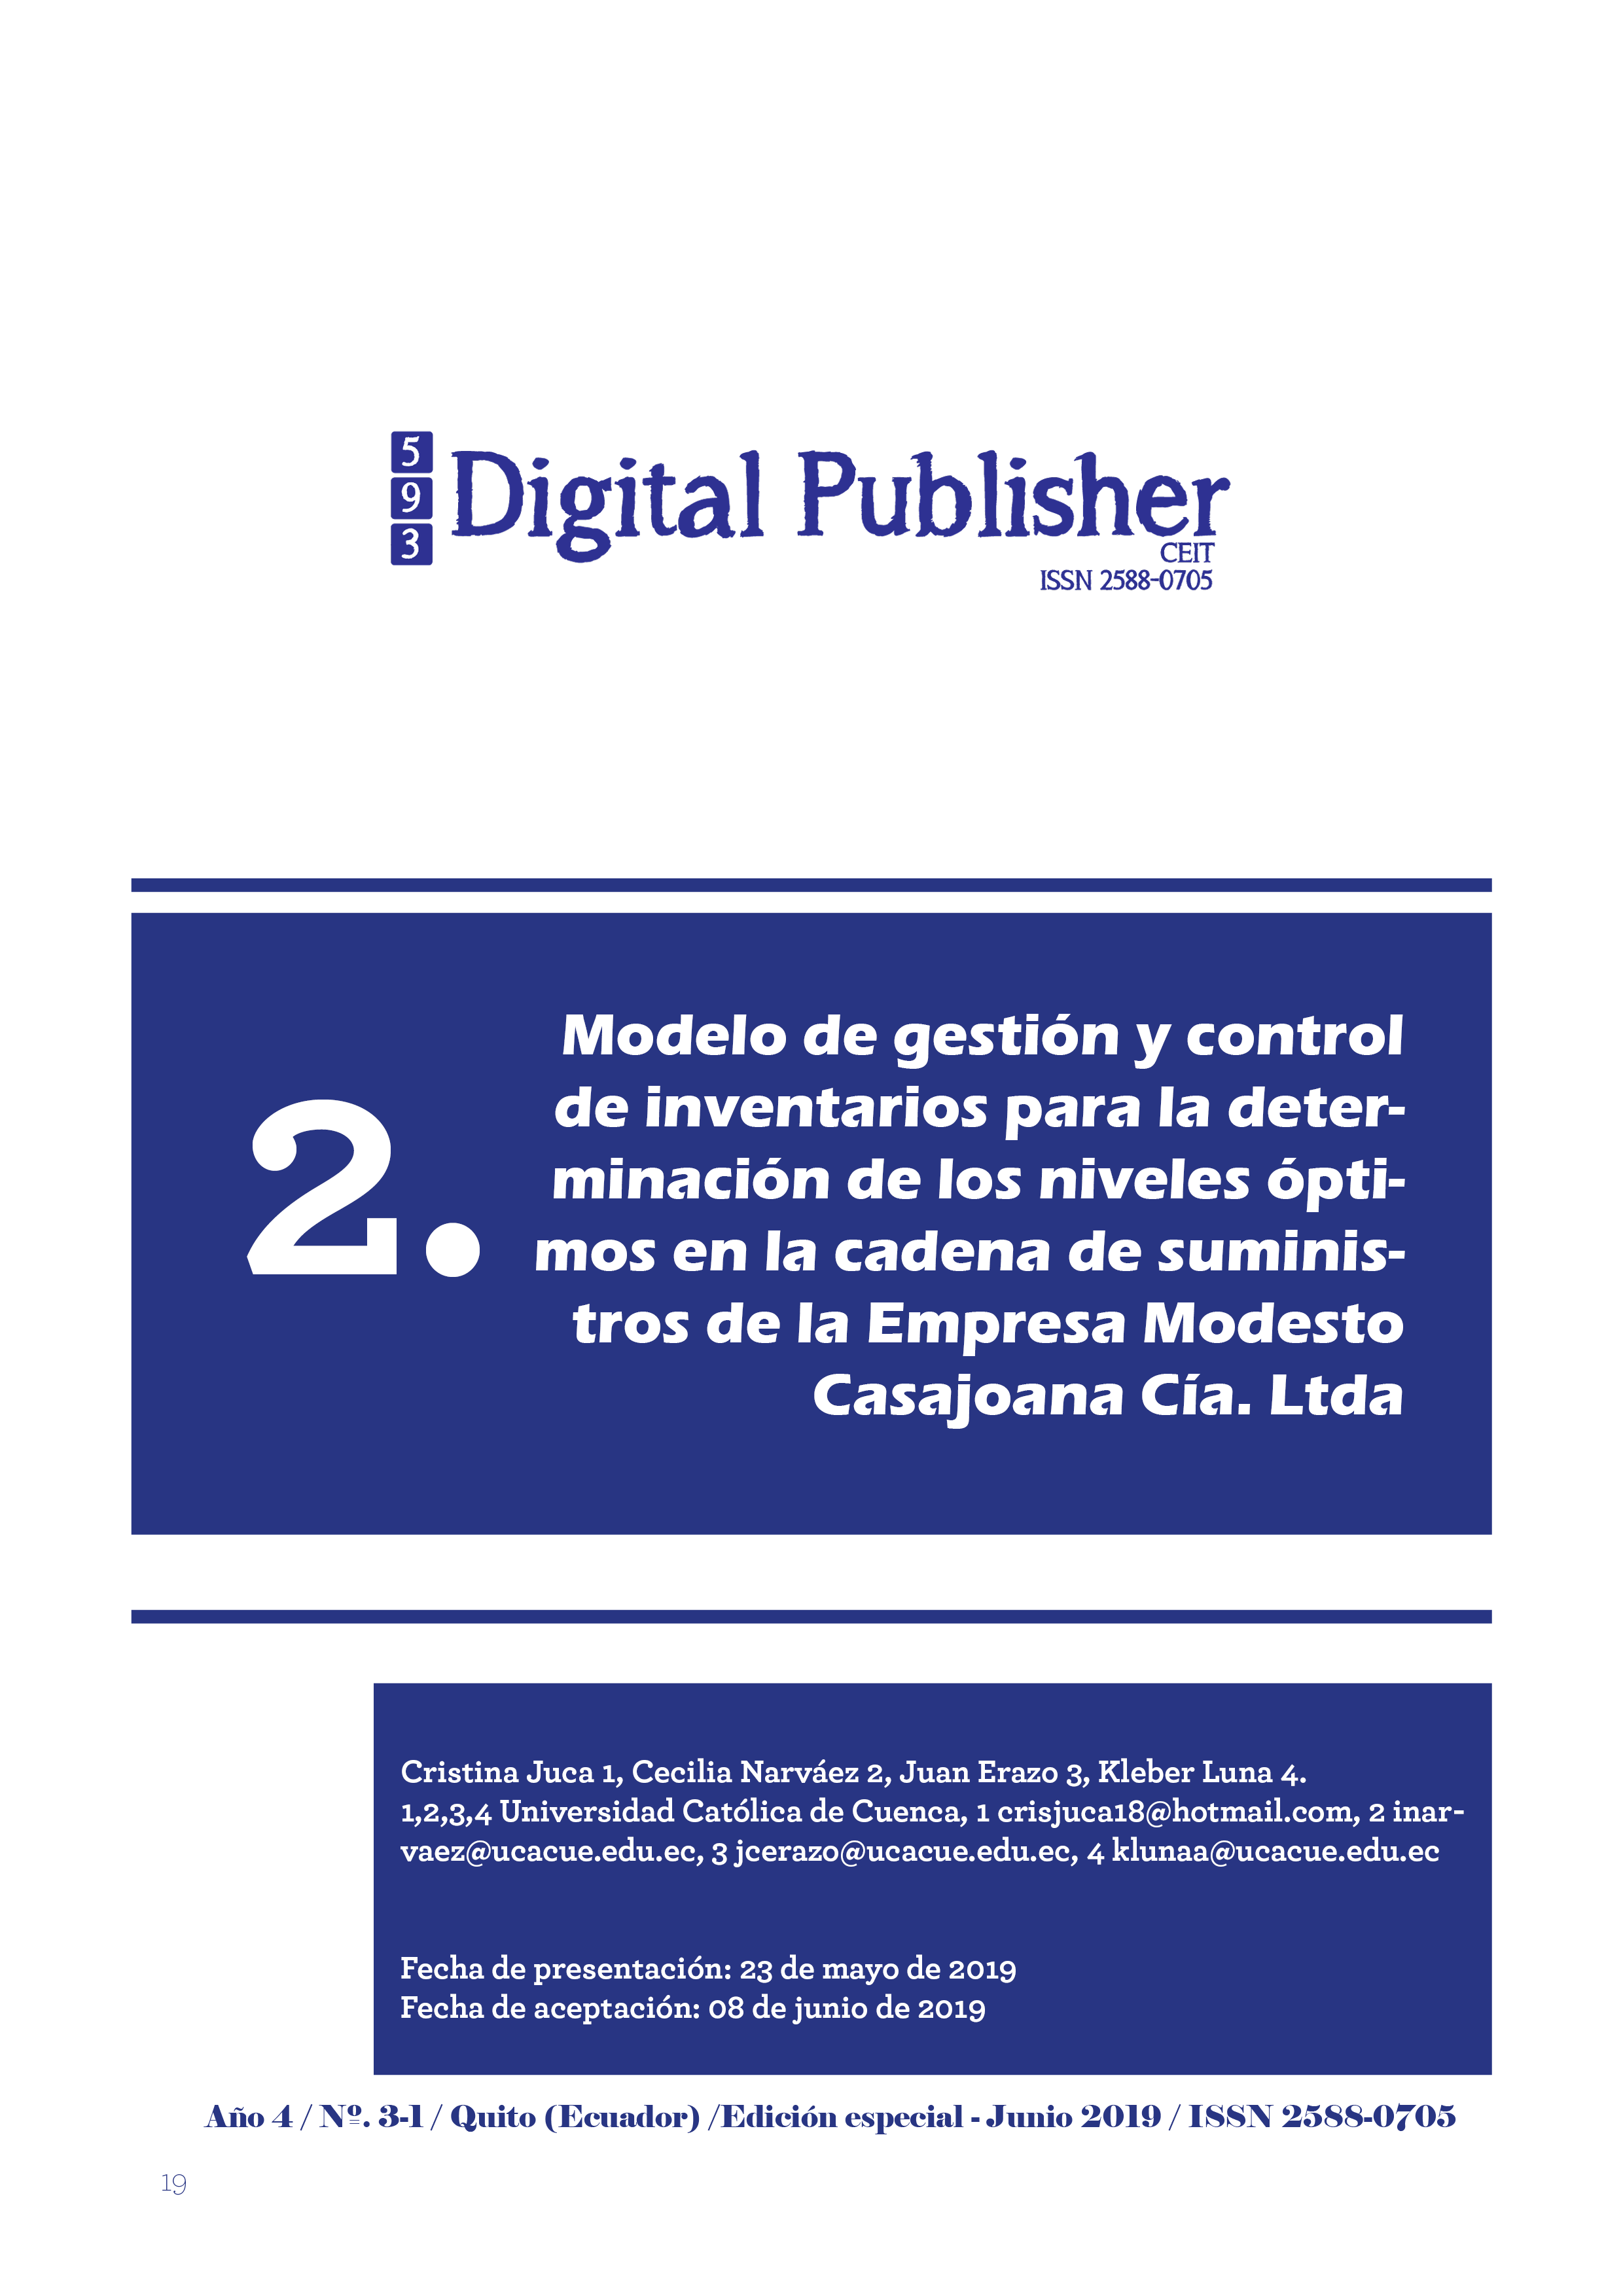 Modelo de gestión y control de inventarios para la determinación de los  niveles óptimos en la cadena de suministros de la Empresa Modesto Casajoana  Cía. Ltda. | 593 Digital Publisher CEIT